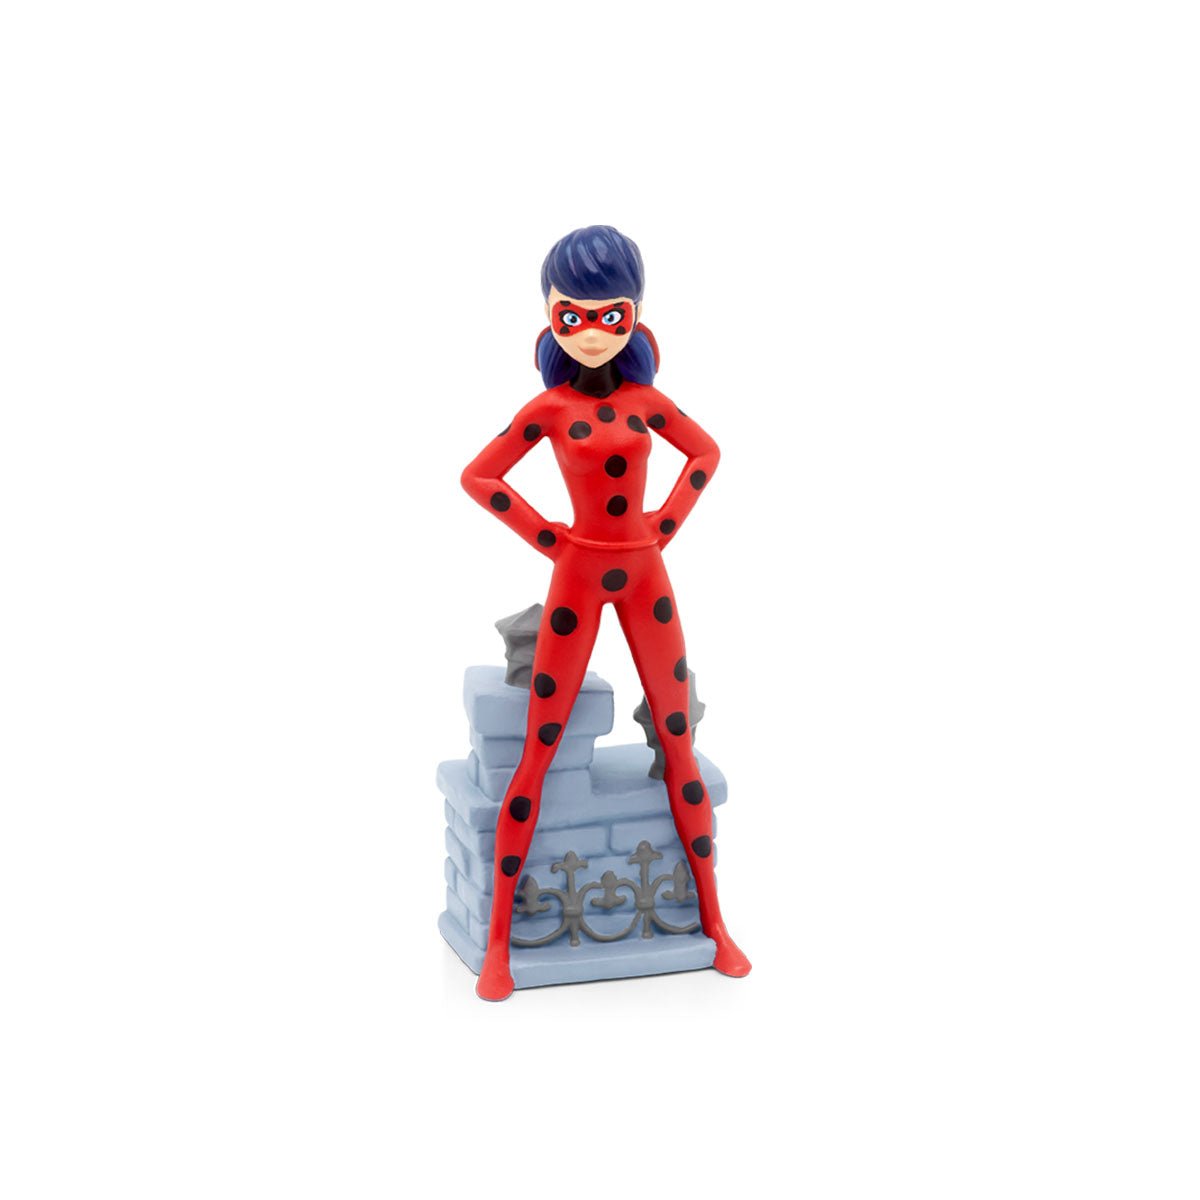 Tonies Miraculous Ladybug Audio Play Figurine - ANB Baby -8401474010213+ years